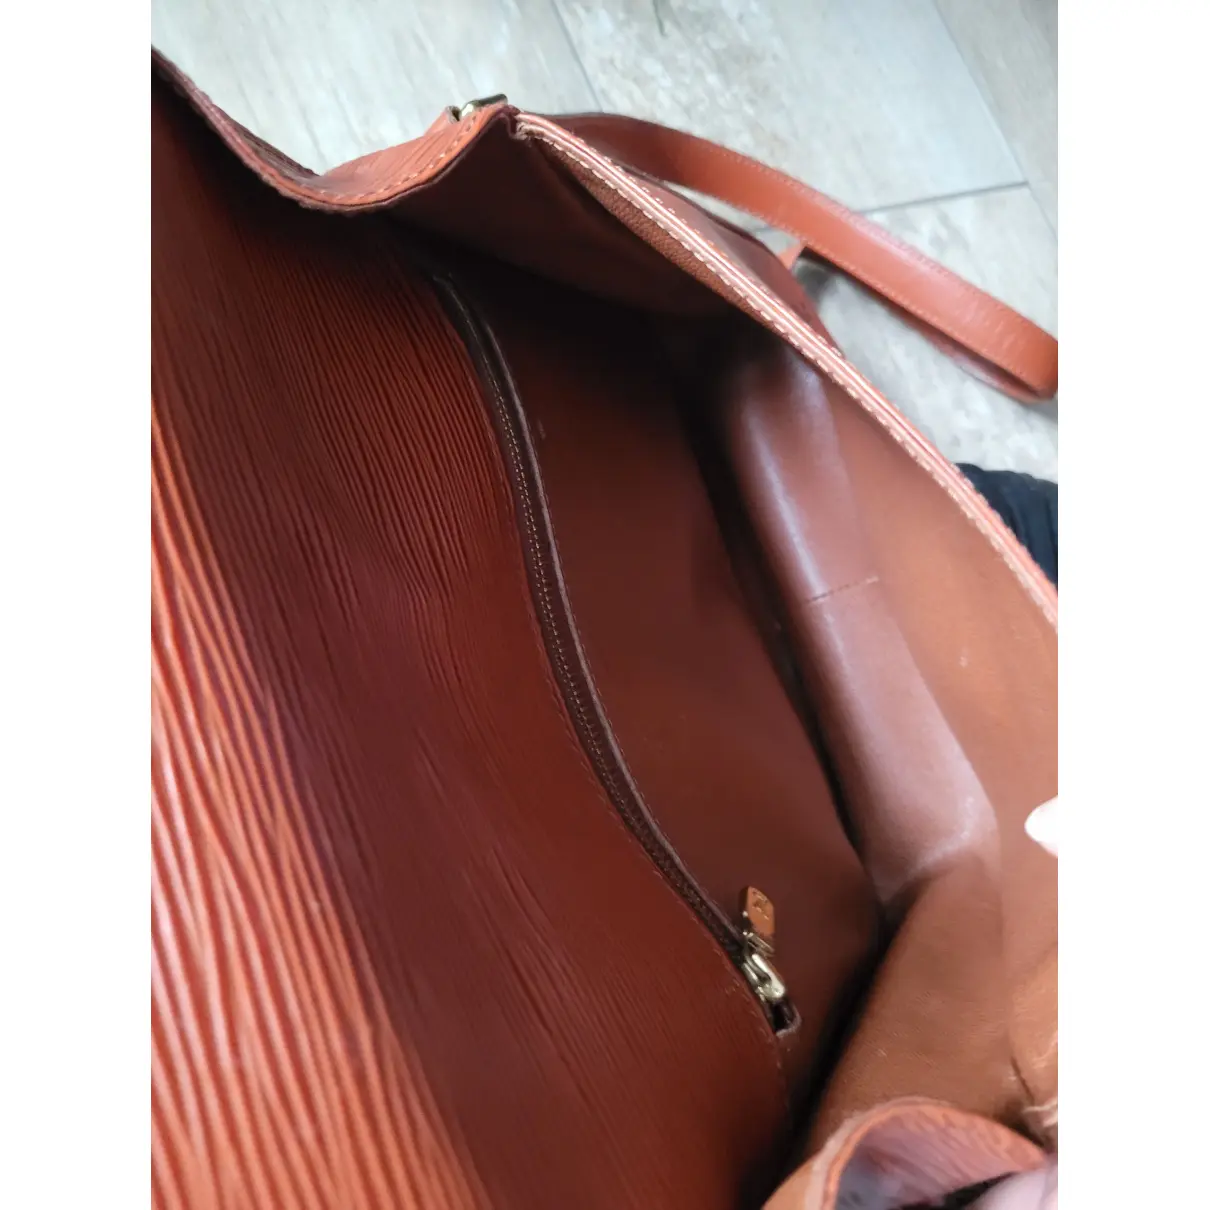 Saint Cloud vintage leather bag Louis Vuitton